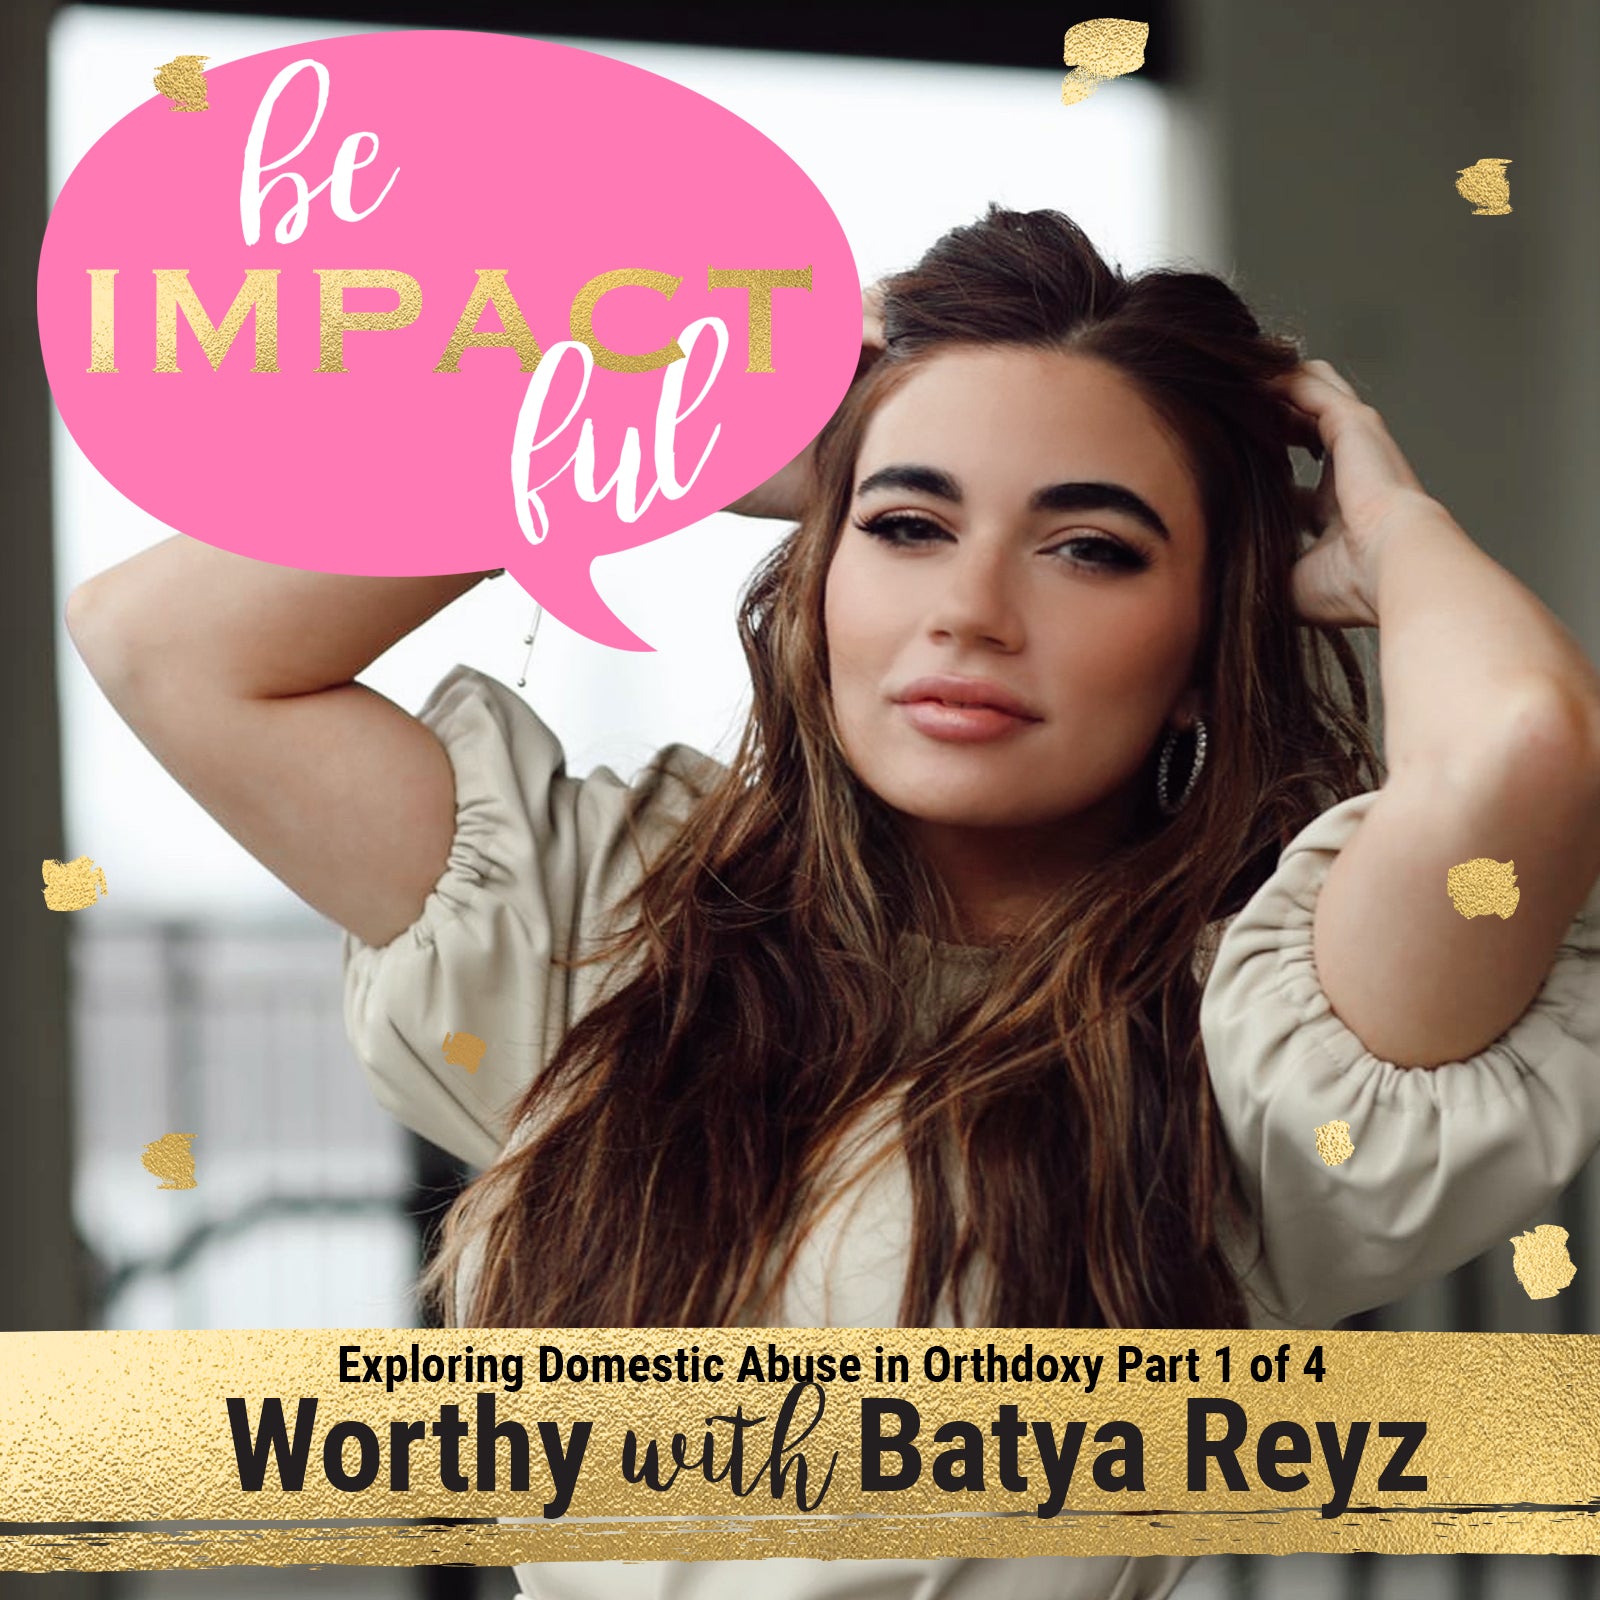 Worthy with Batya Reyz